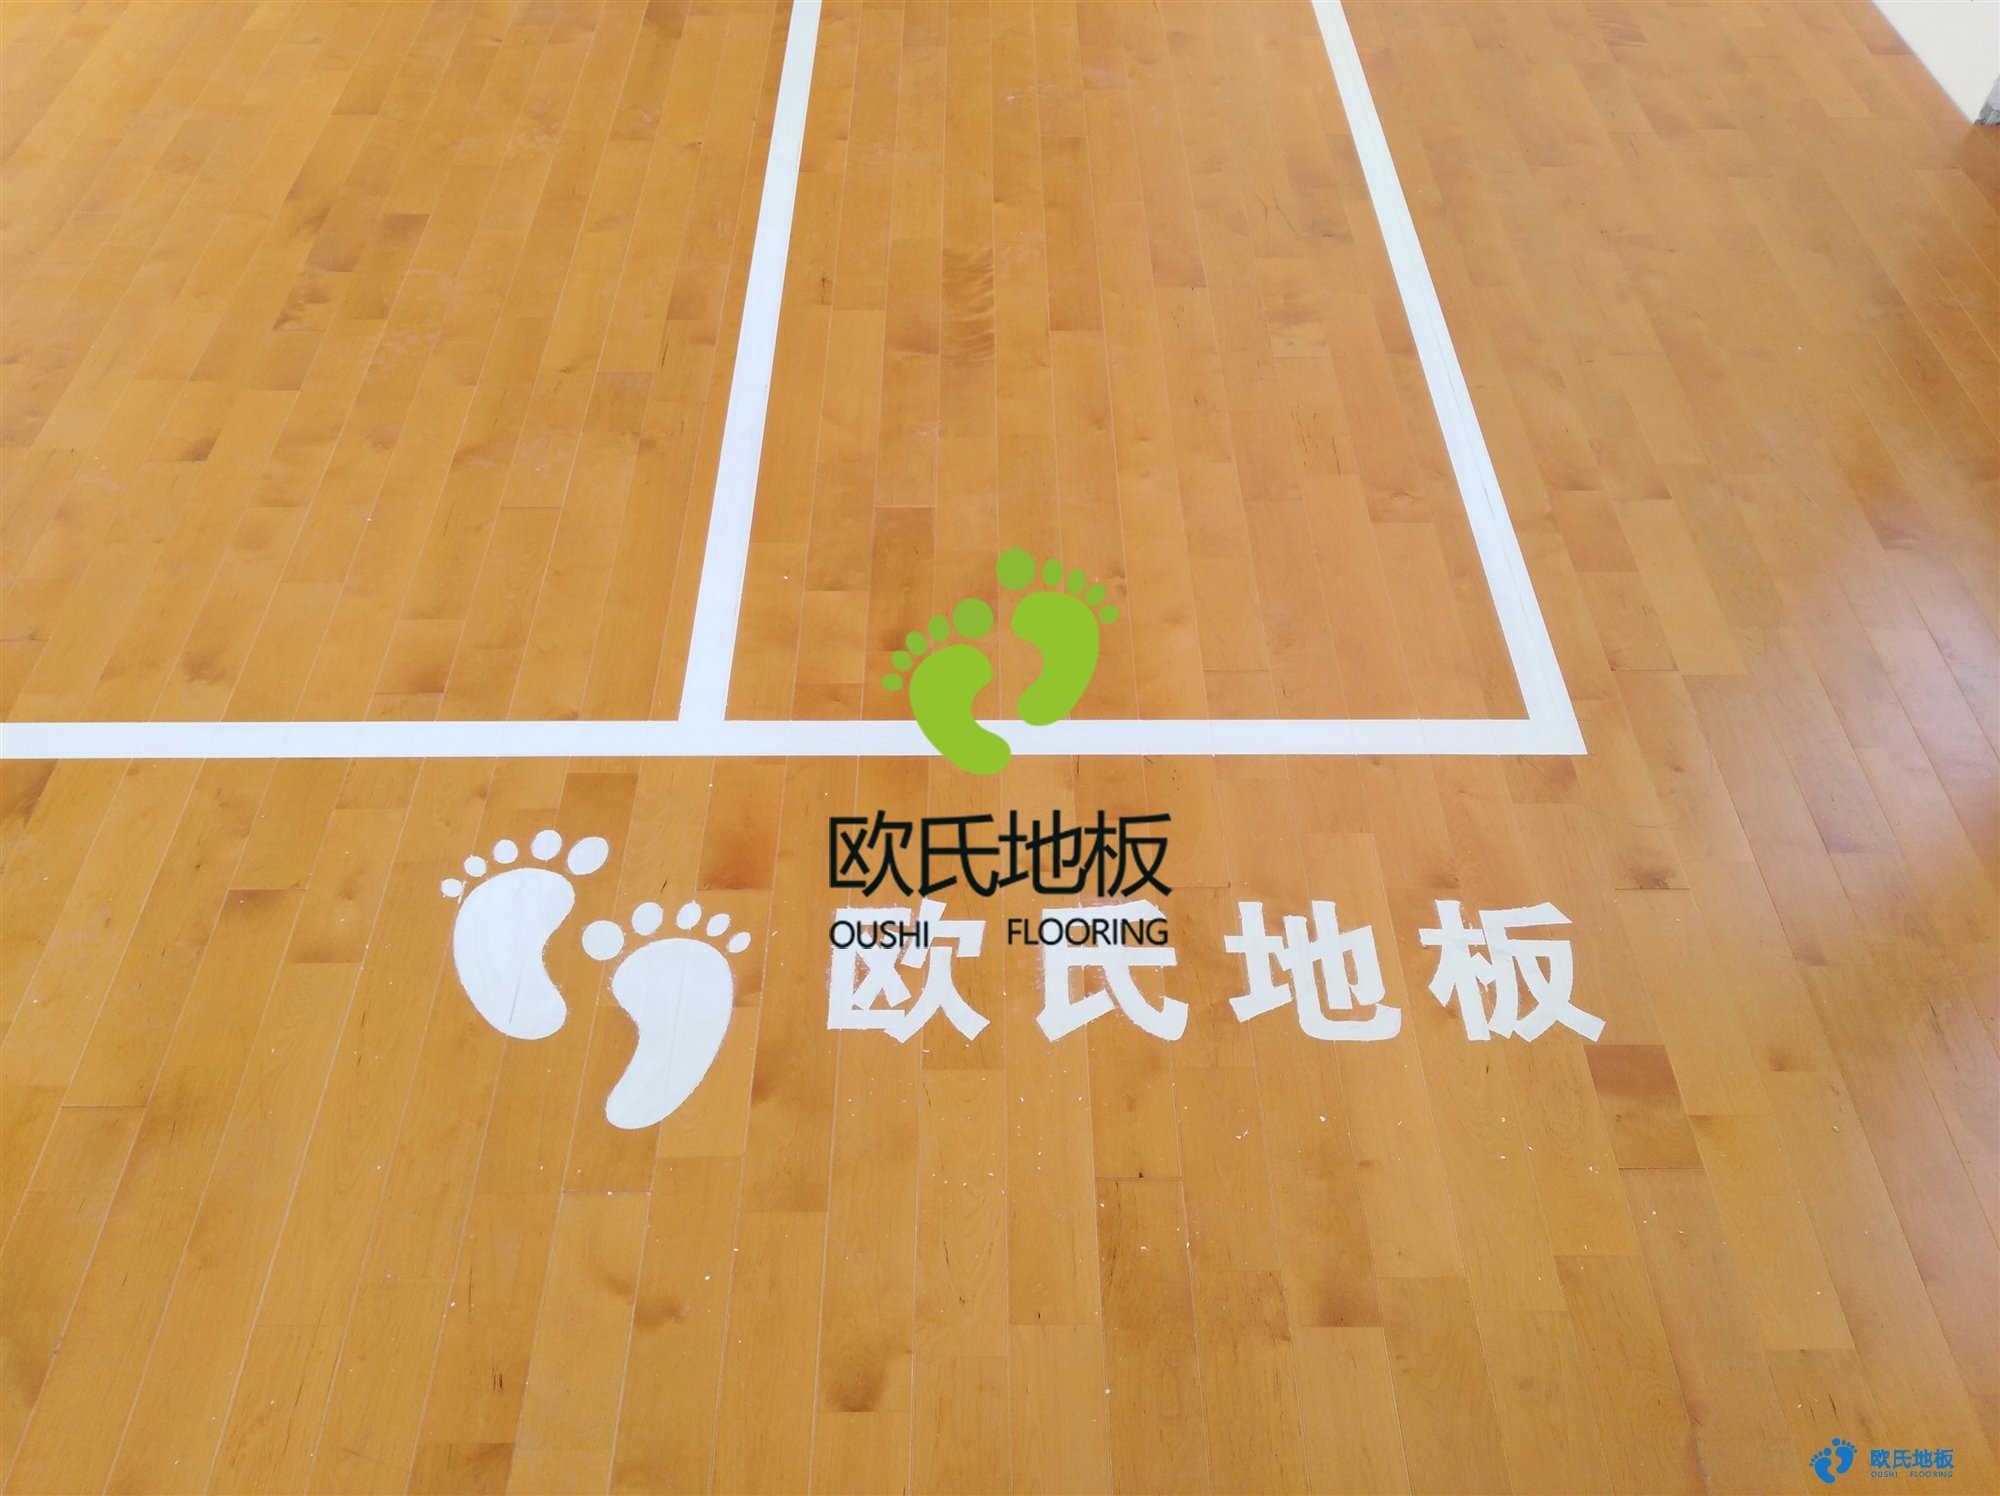 邹城运动木地板经销 体育馆运动地板工程安装